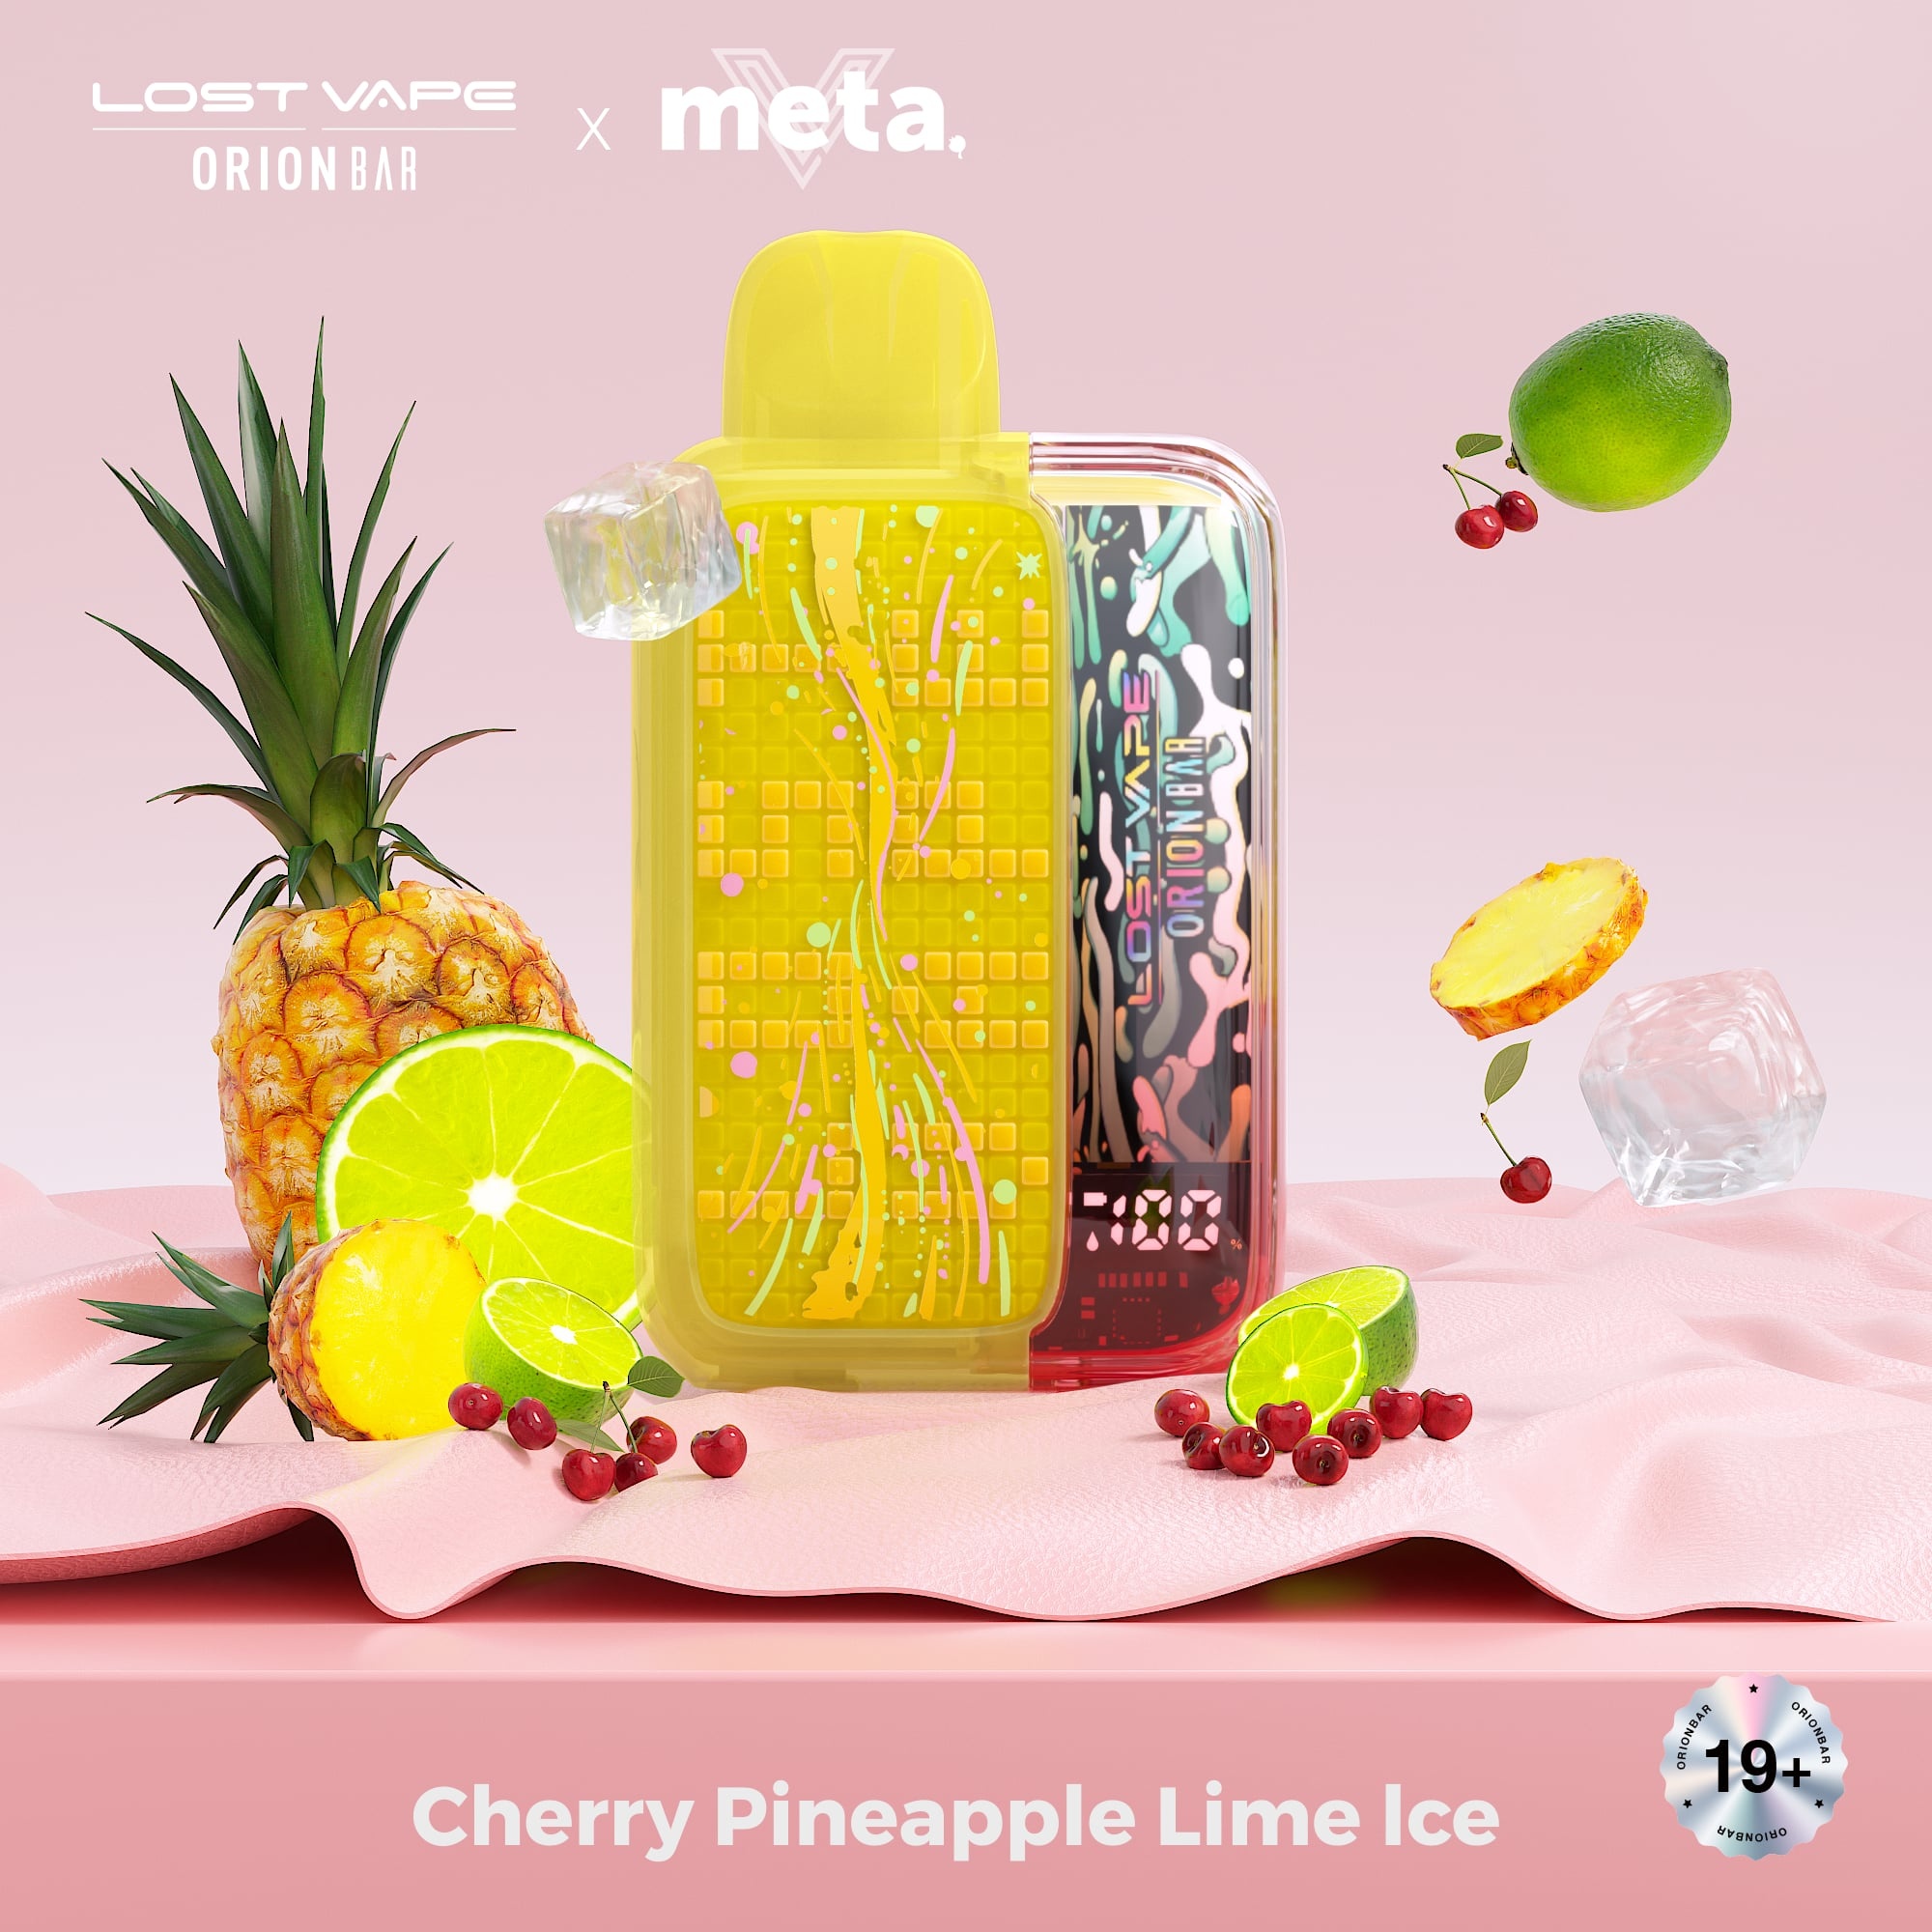 Lost Vape Orion Bar Orion Bar 10K - Cherry Pineapple Lime